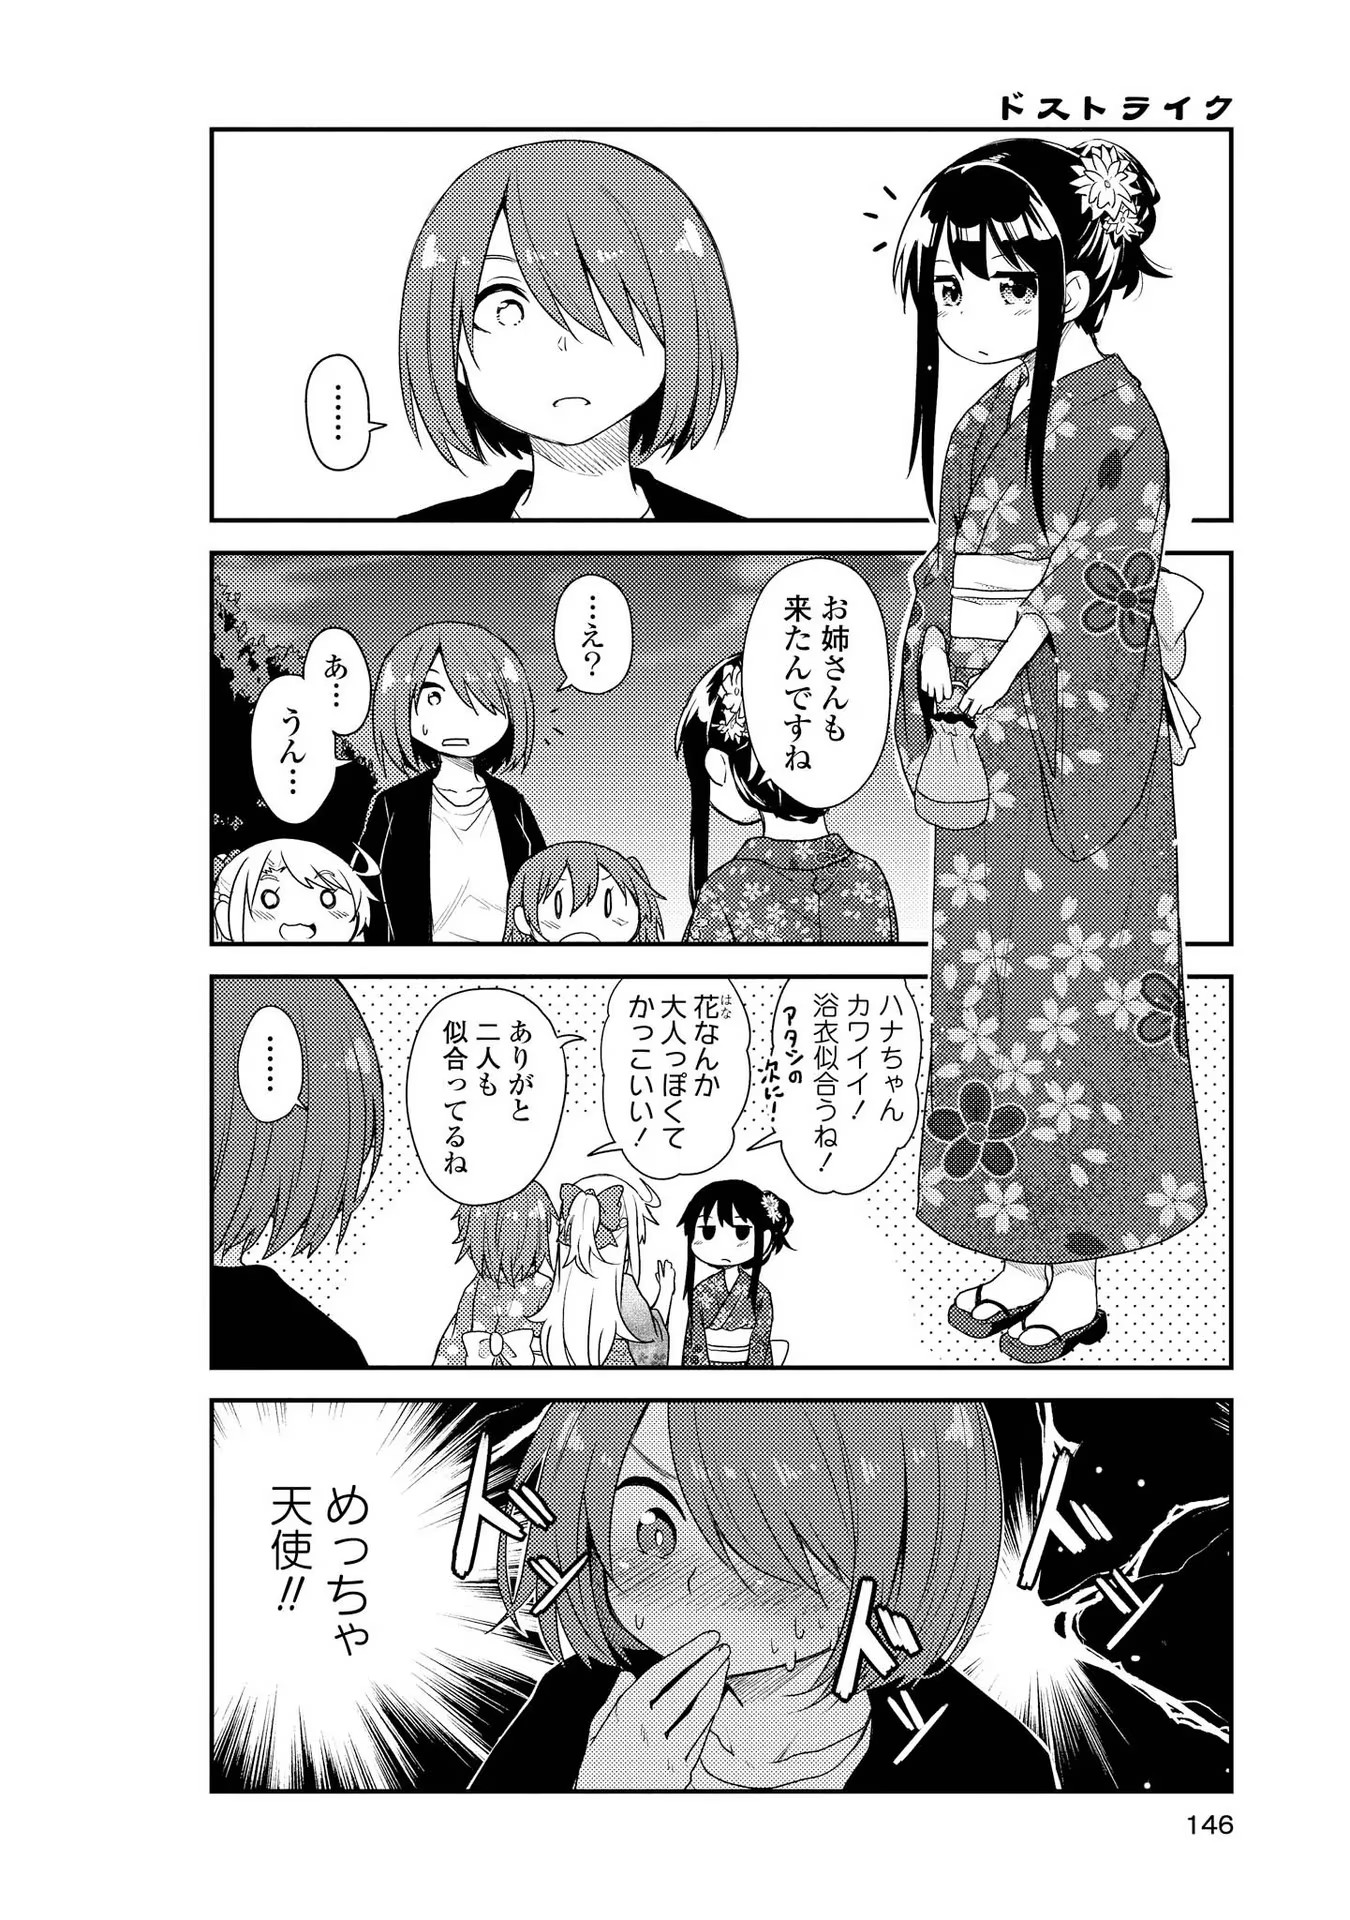 Watashi ni Tenshi ga Maiorita! - Chapter 10 - Page 4